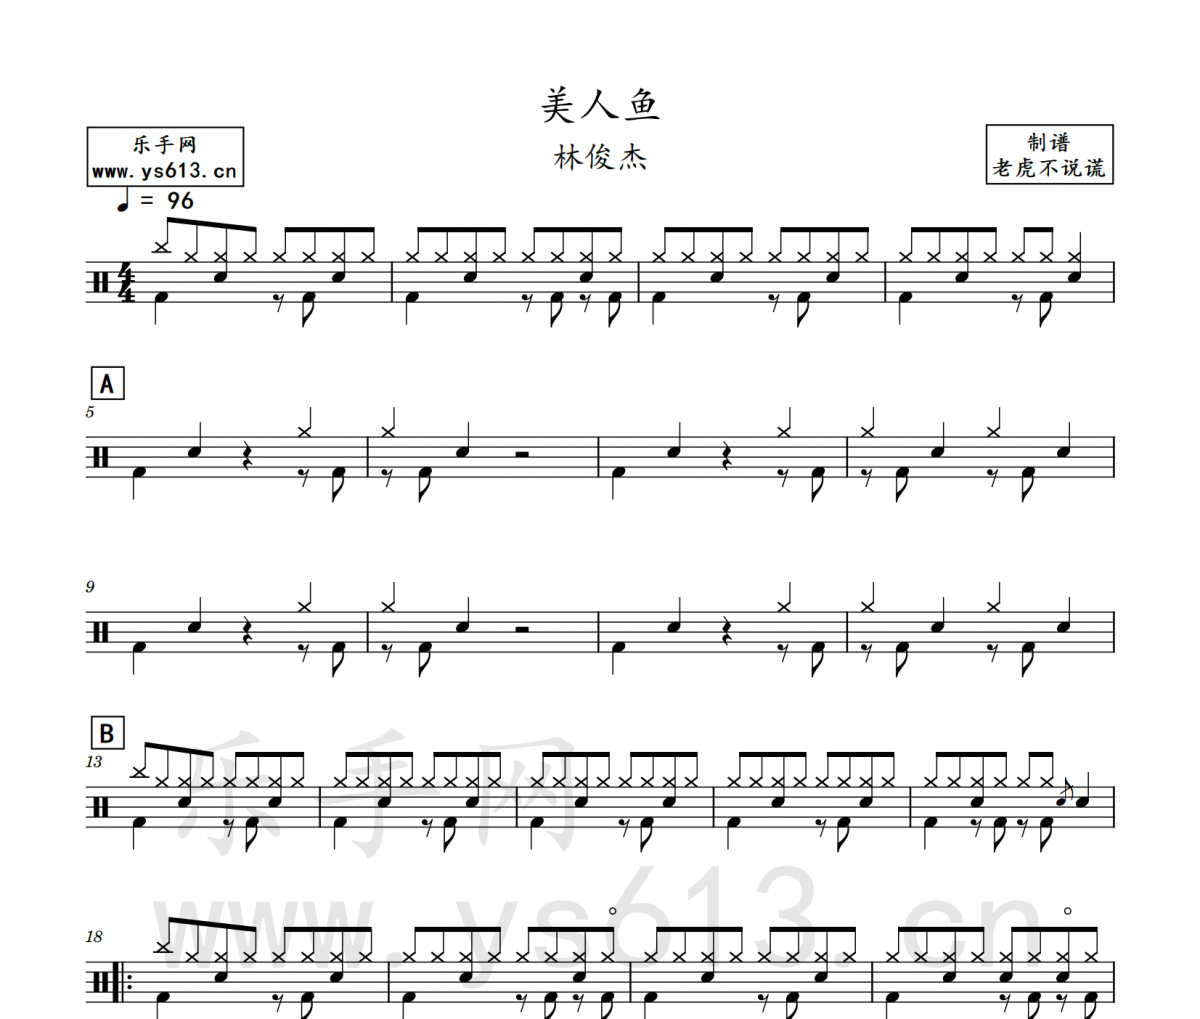 林俊杰-美人鱼（简化版）架子鼓谱爵士鼓曲谱